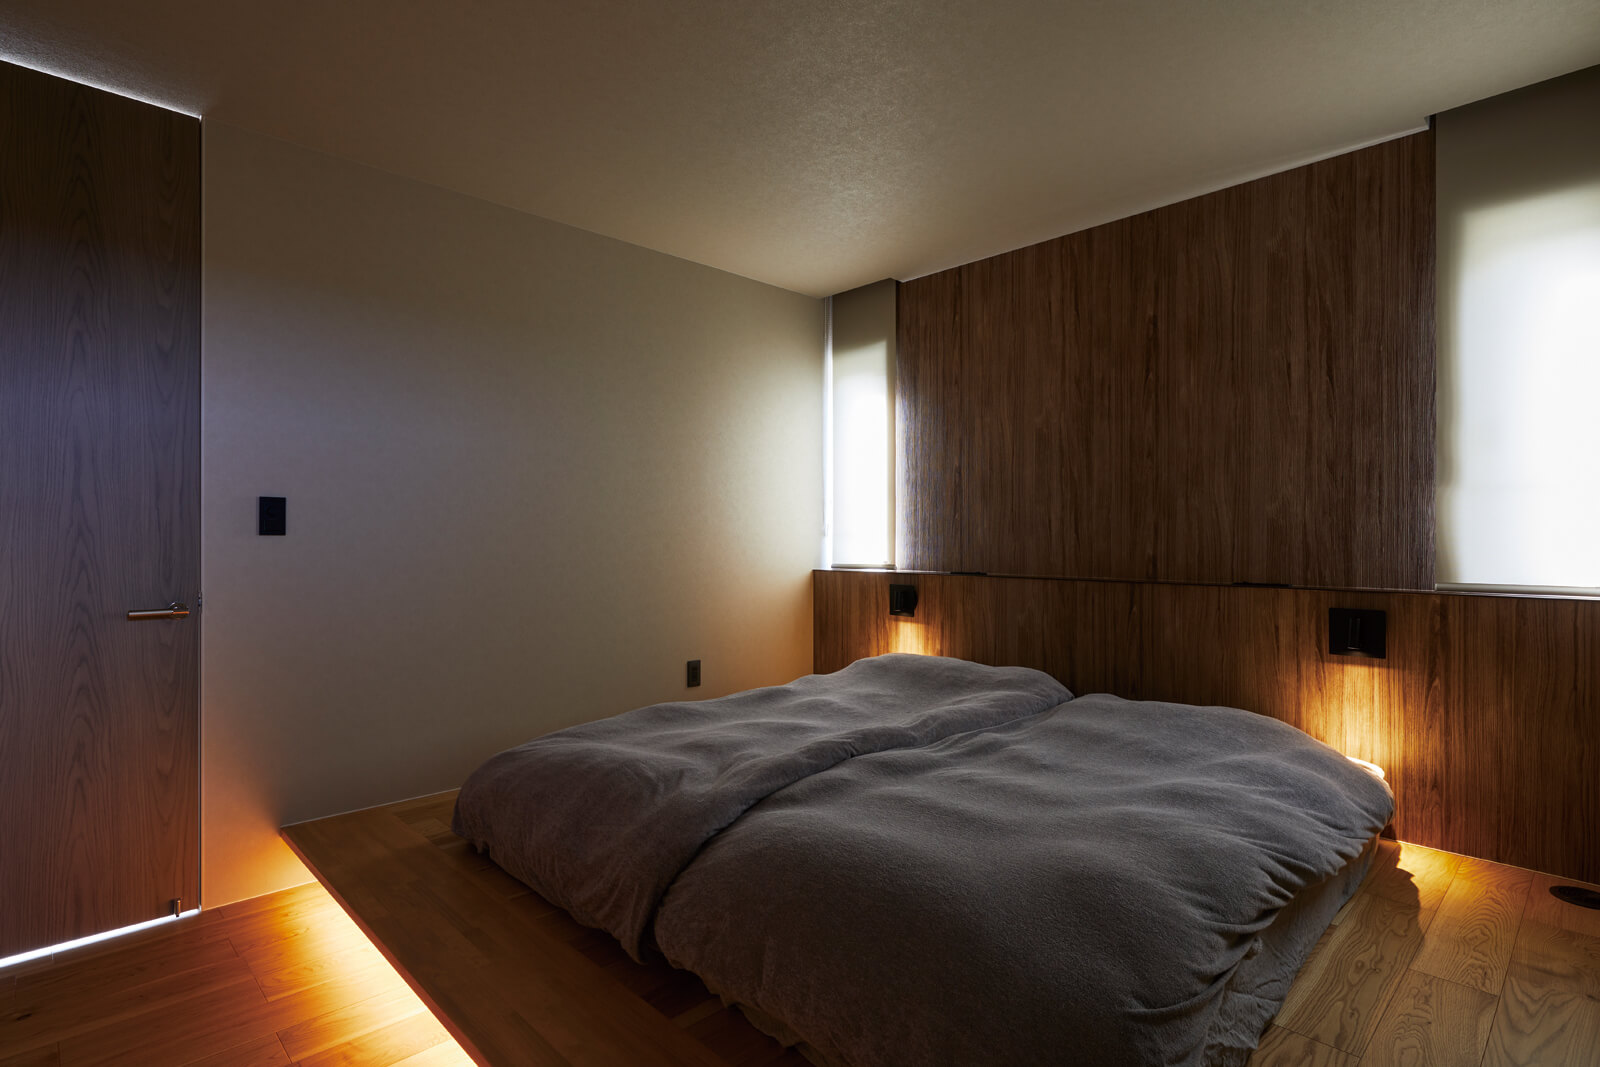 寝室は間接照明でリラックスできる空間に。西向きの窓からは、朝になるとやわらかく陽射しが入り、ゆっくりと目覚めを促す